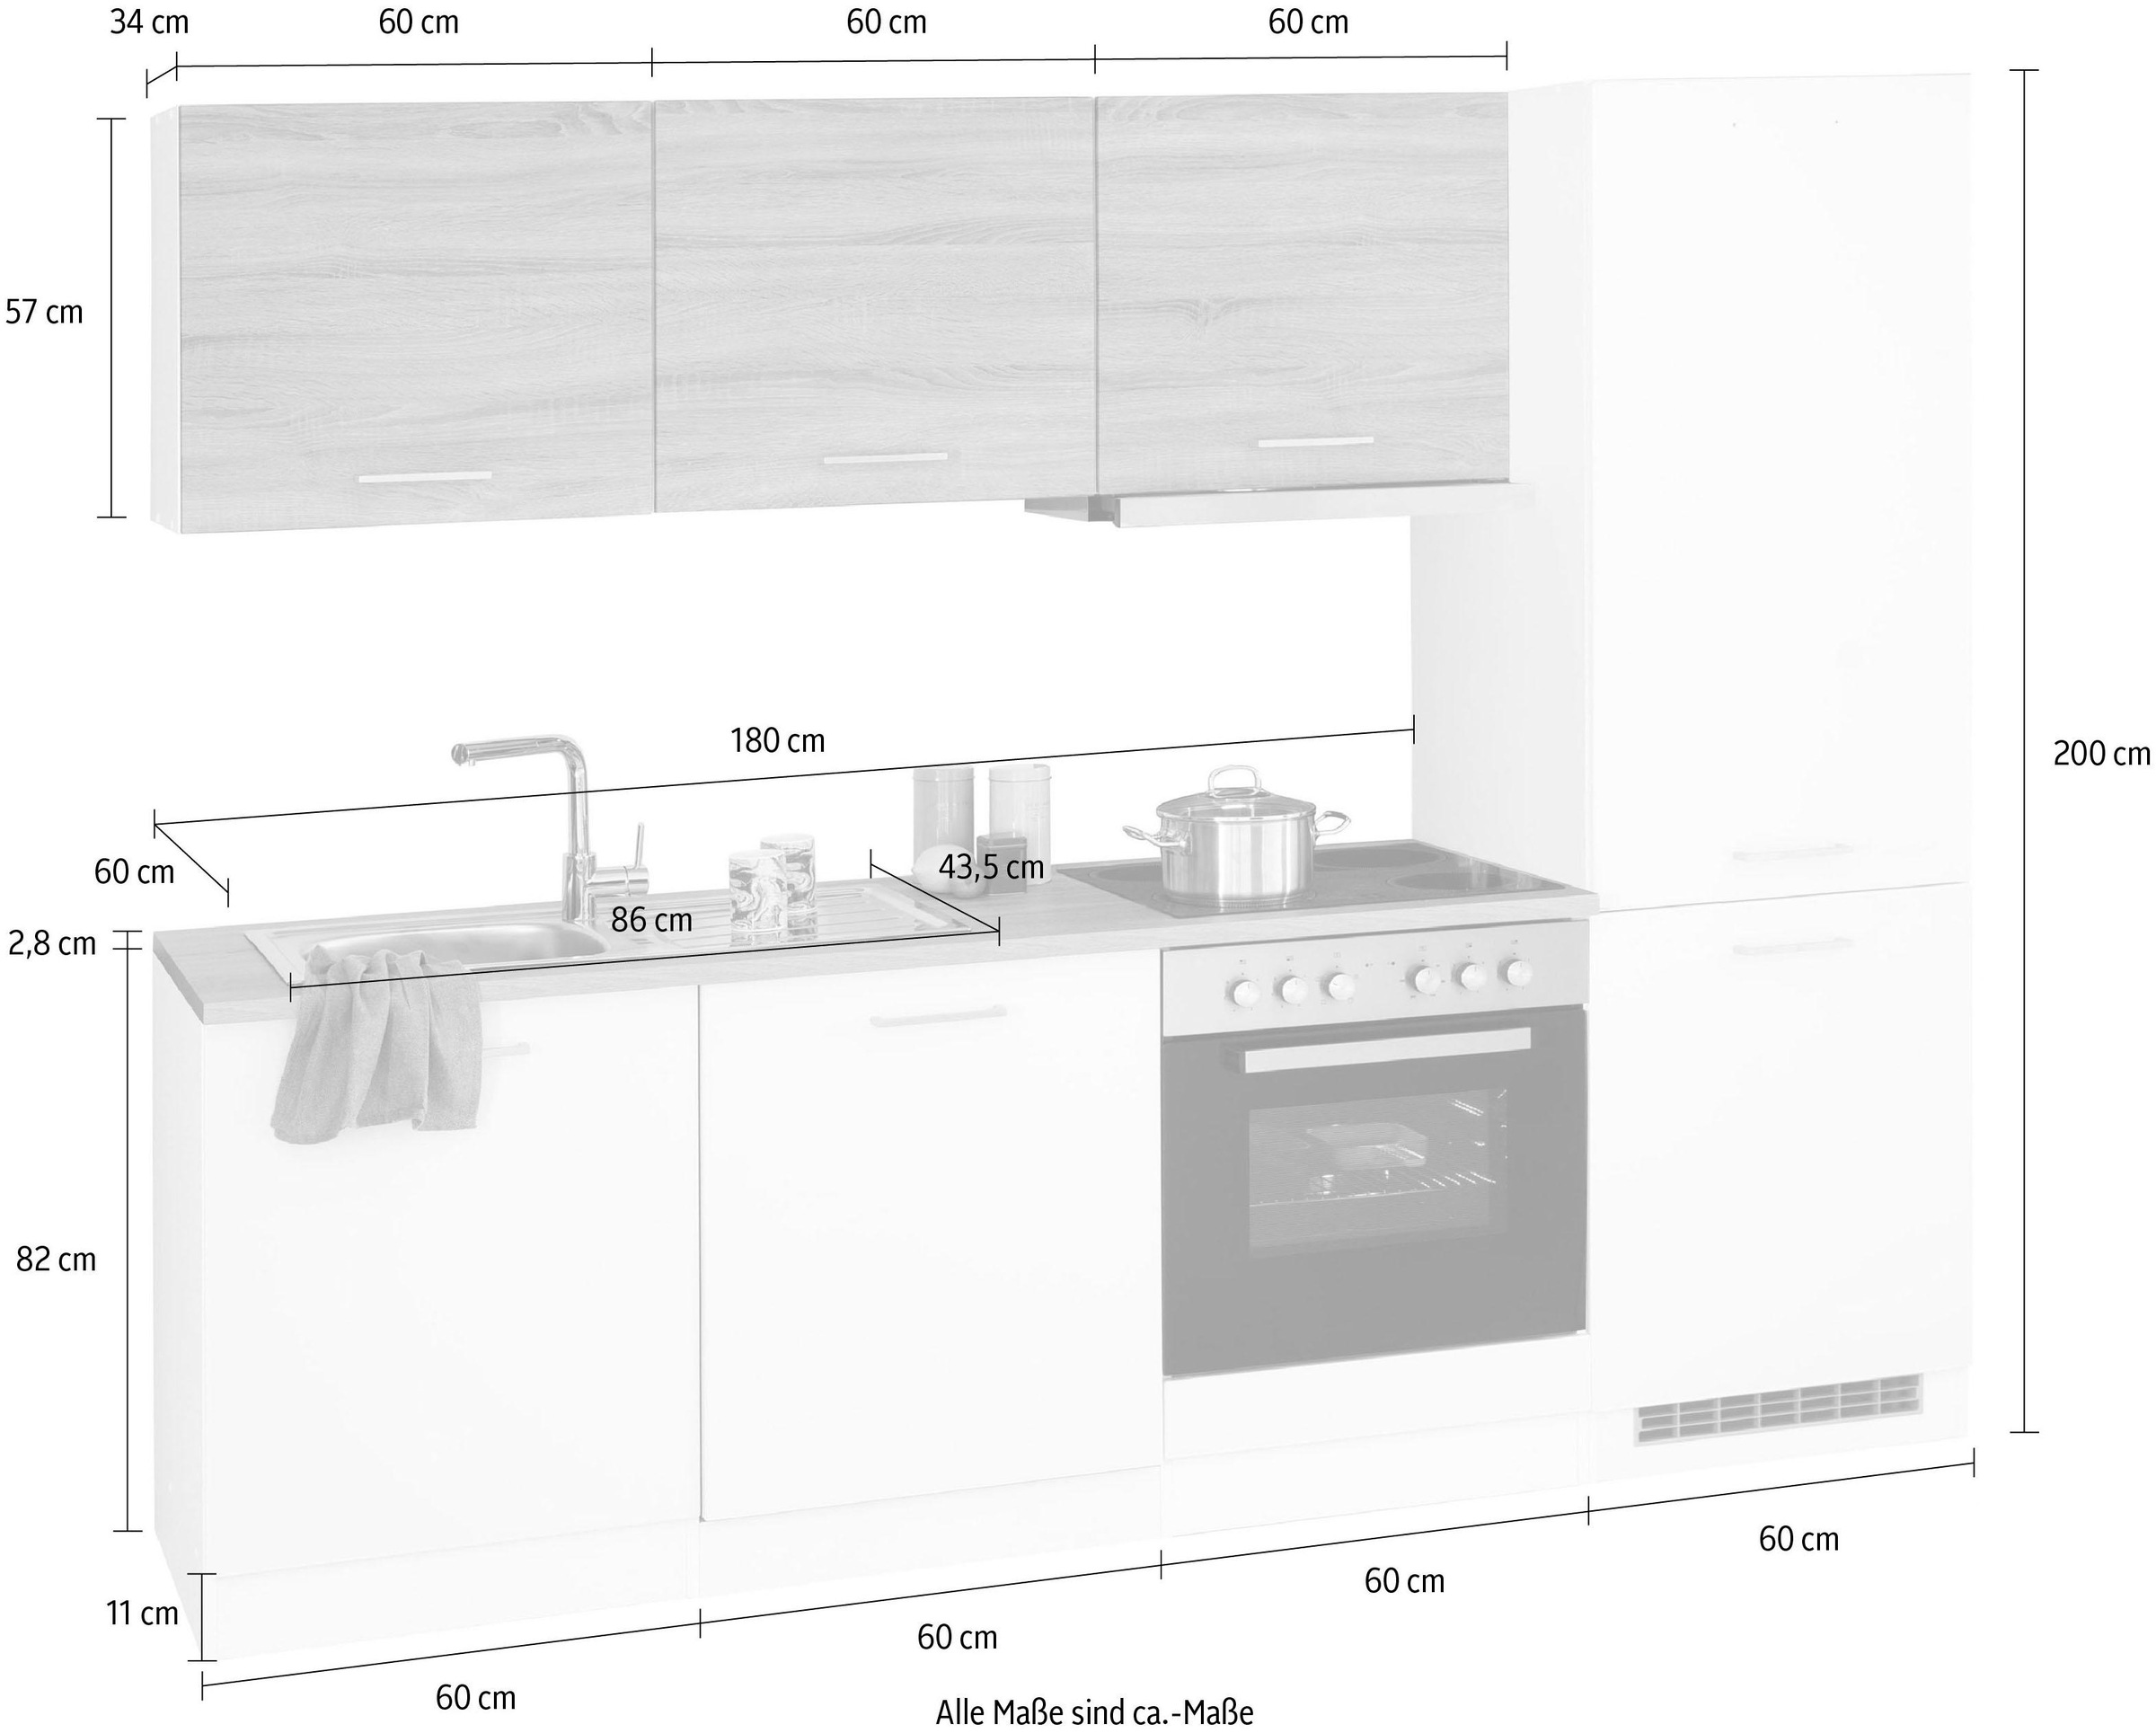 HELD MÖBEL Küchenzeile »Visby«, mit E-Geräte, 240 cm, inkl. Kühl/Gefrierkombination und Geschirrspüler